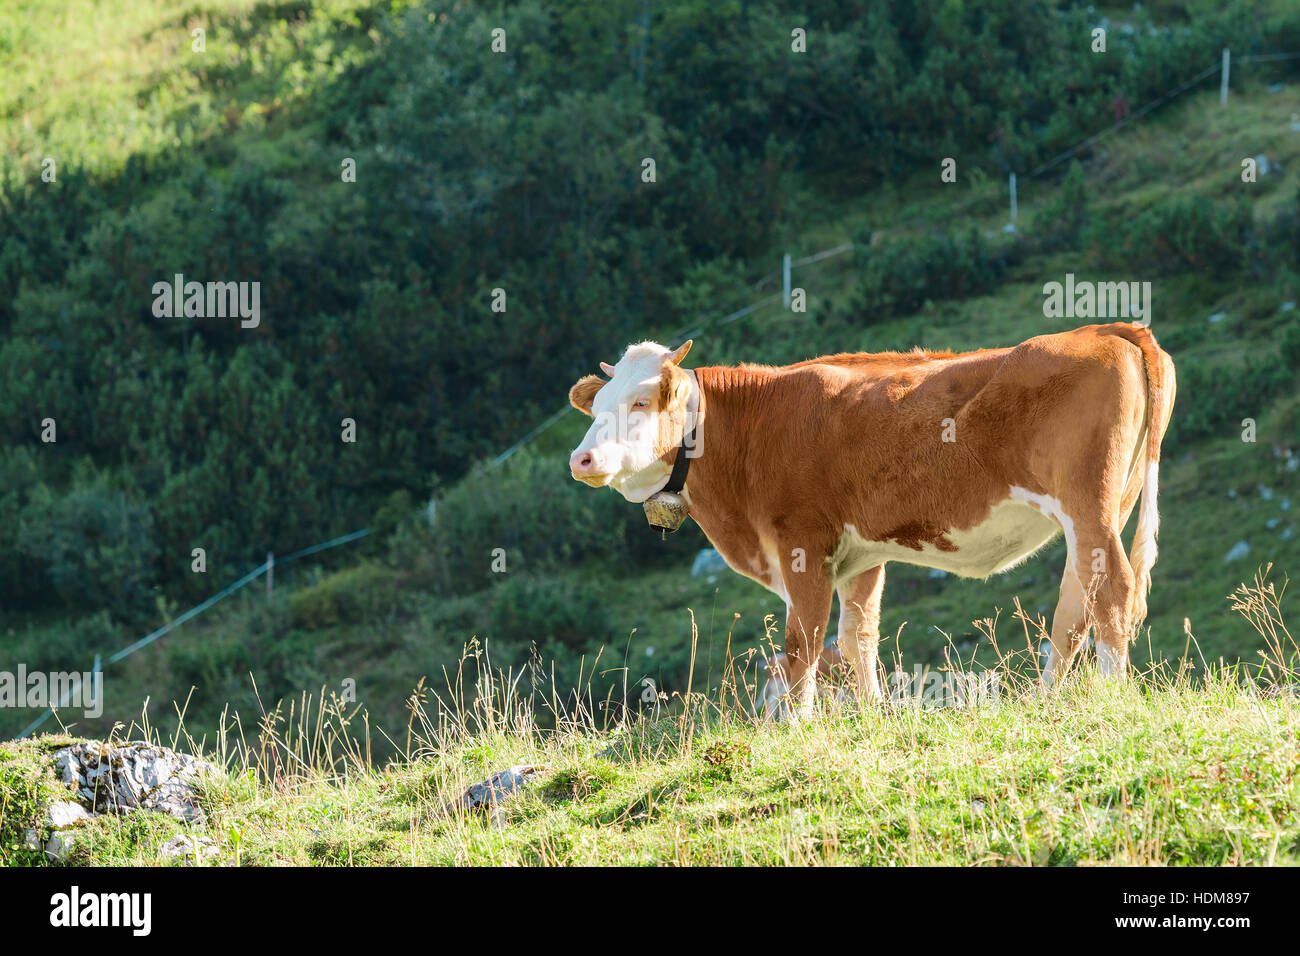 Highlands pascolo alpino con erba fresca e Hereford allevare mucche al pascolo. Foto di stock catturati a Alpi montagna in estate giornata di sole. Foto Stock